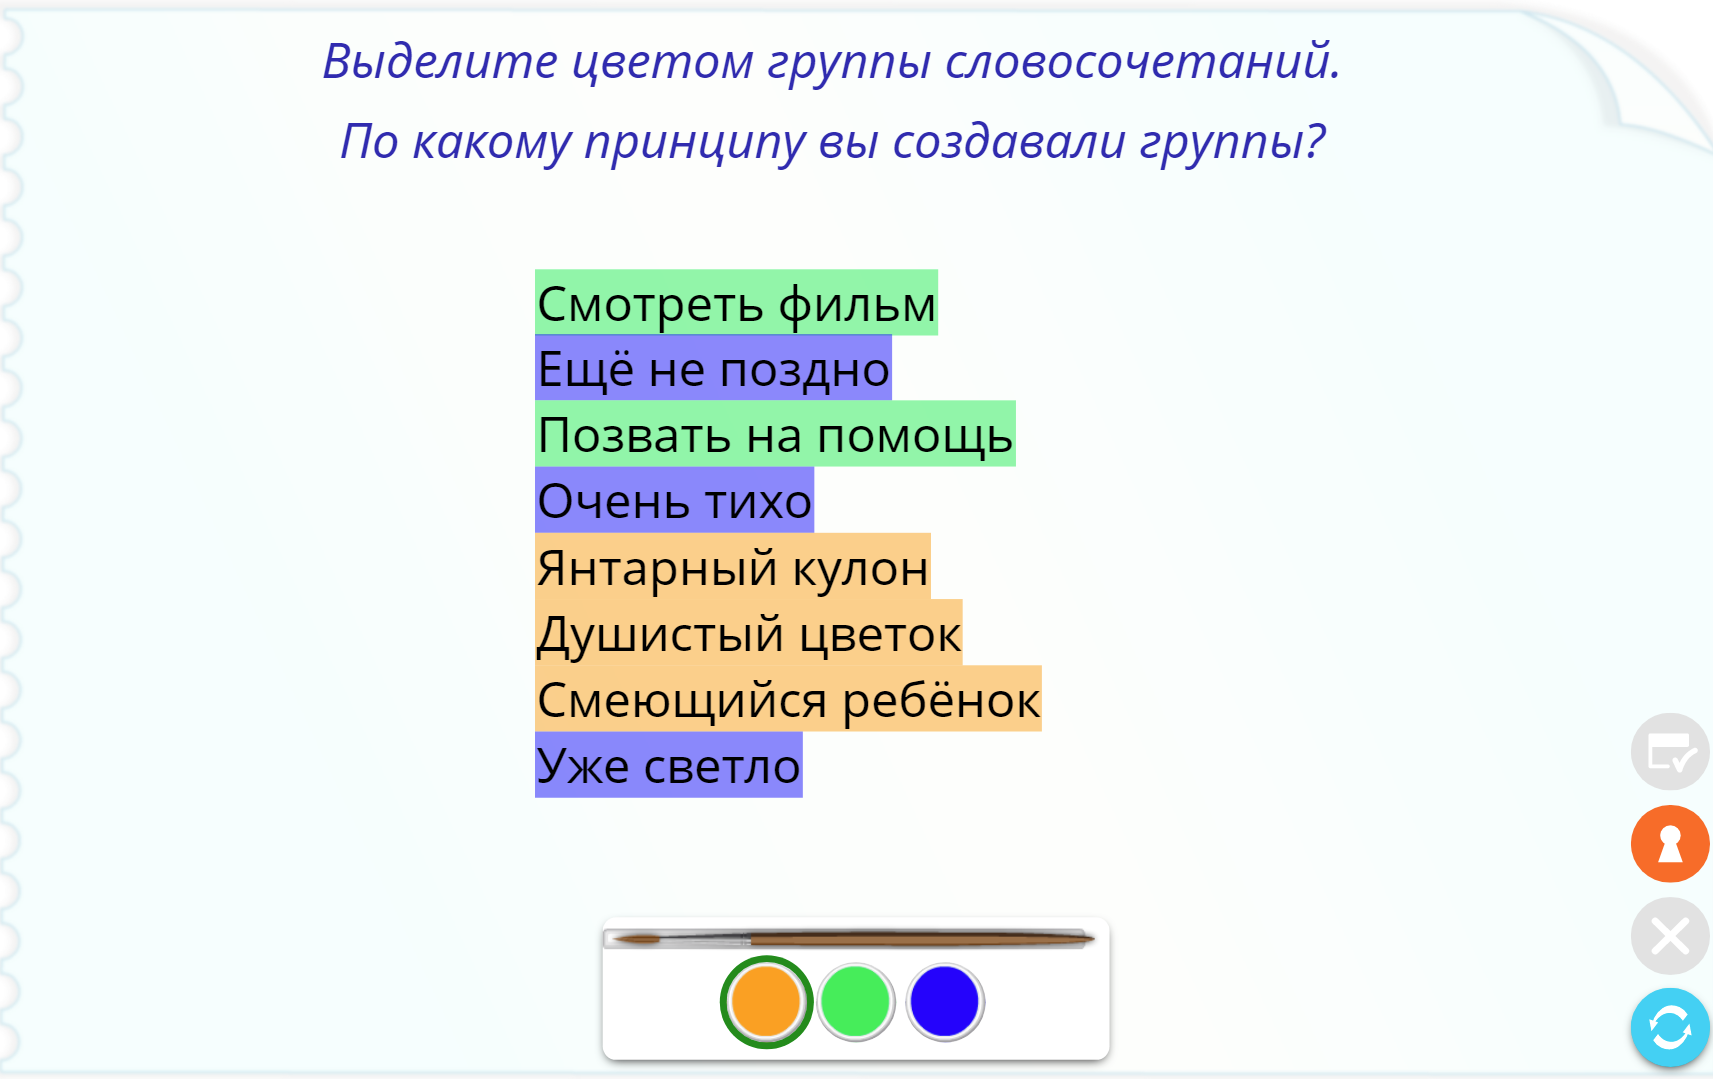 Сценарий урока по русскому языку. Сценарий урока. Угадать слово по описанию игра на уроке русского языка.